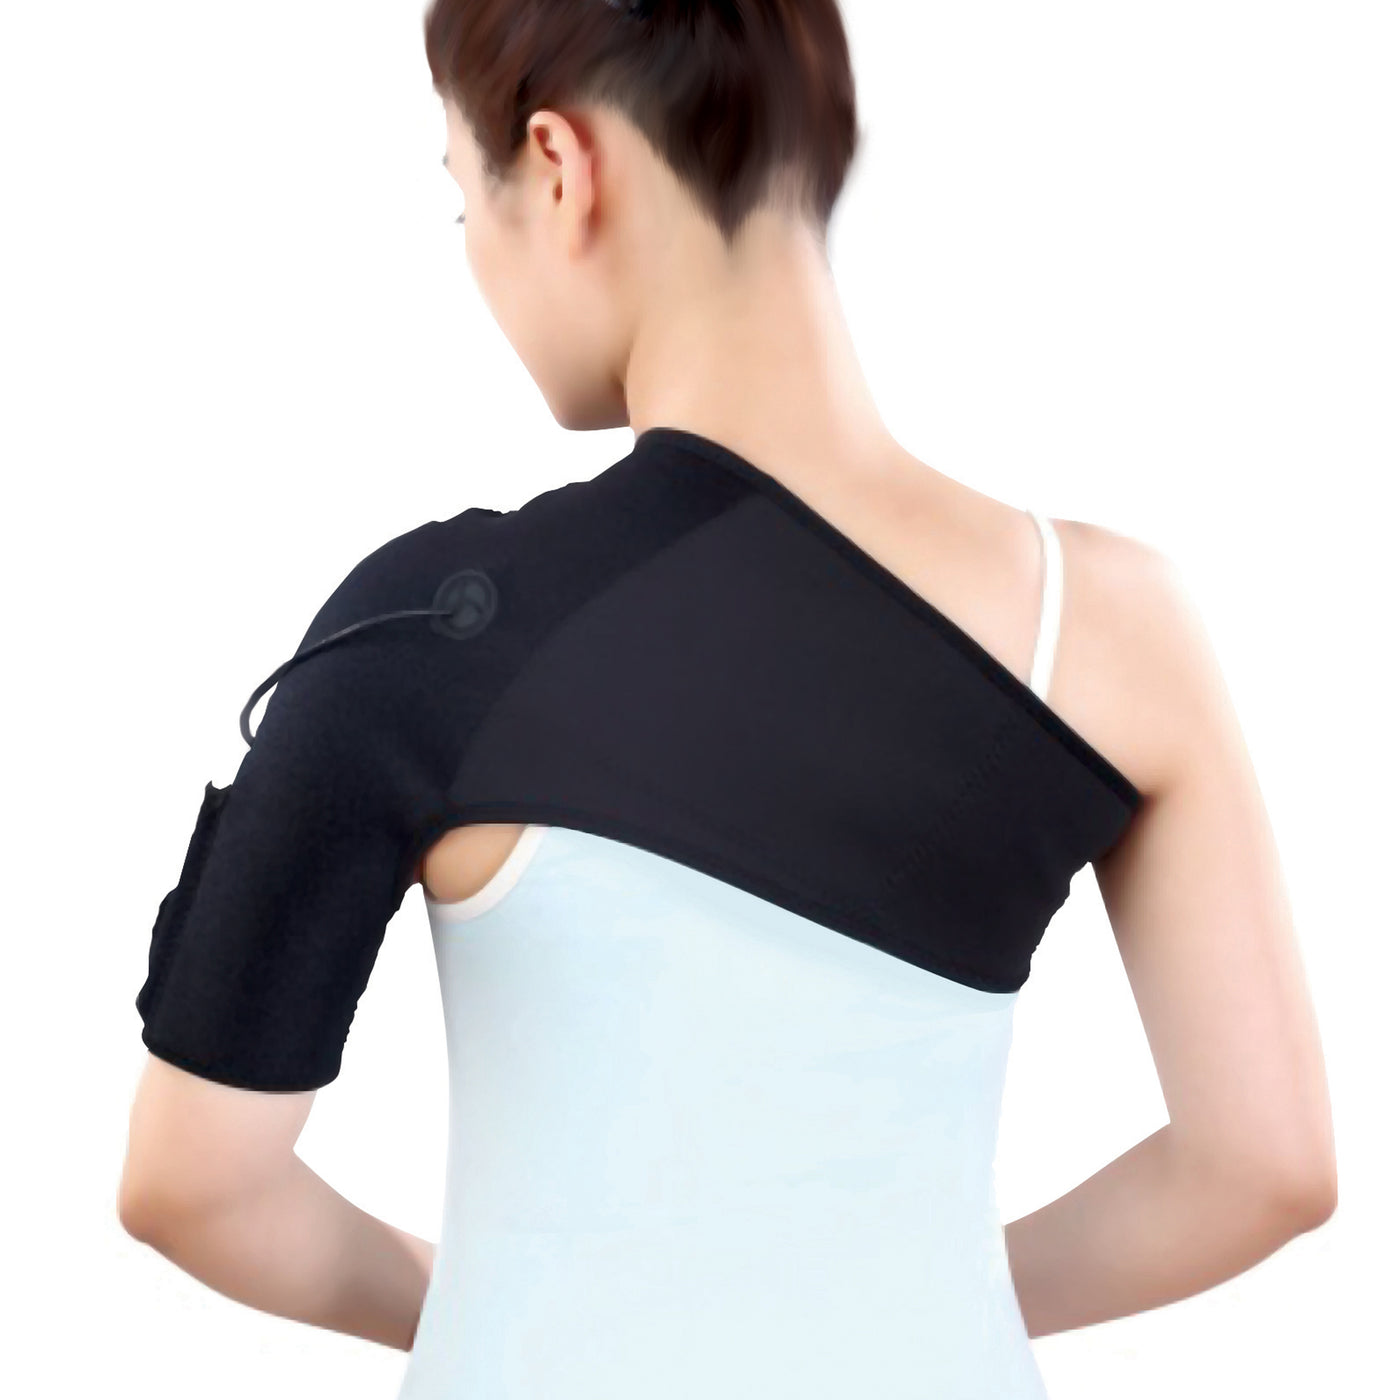 Fysic FHP-170L - Draadloze warmte bandage voor schouder, links